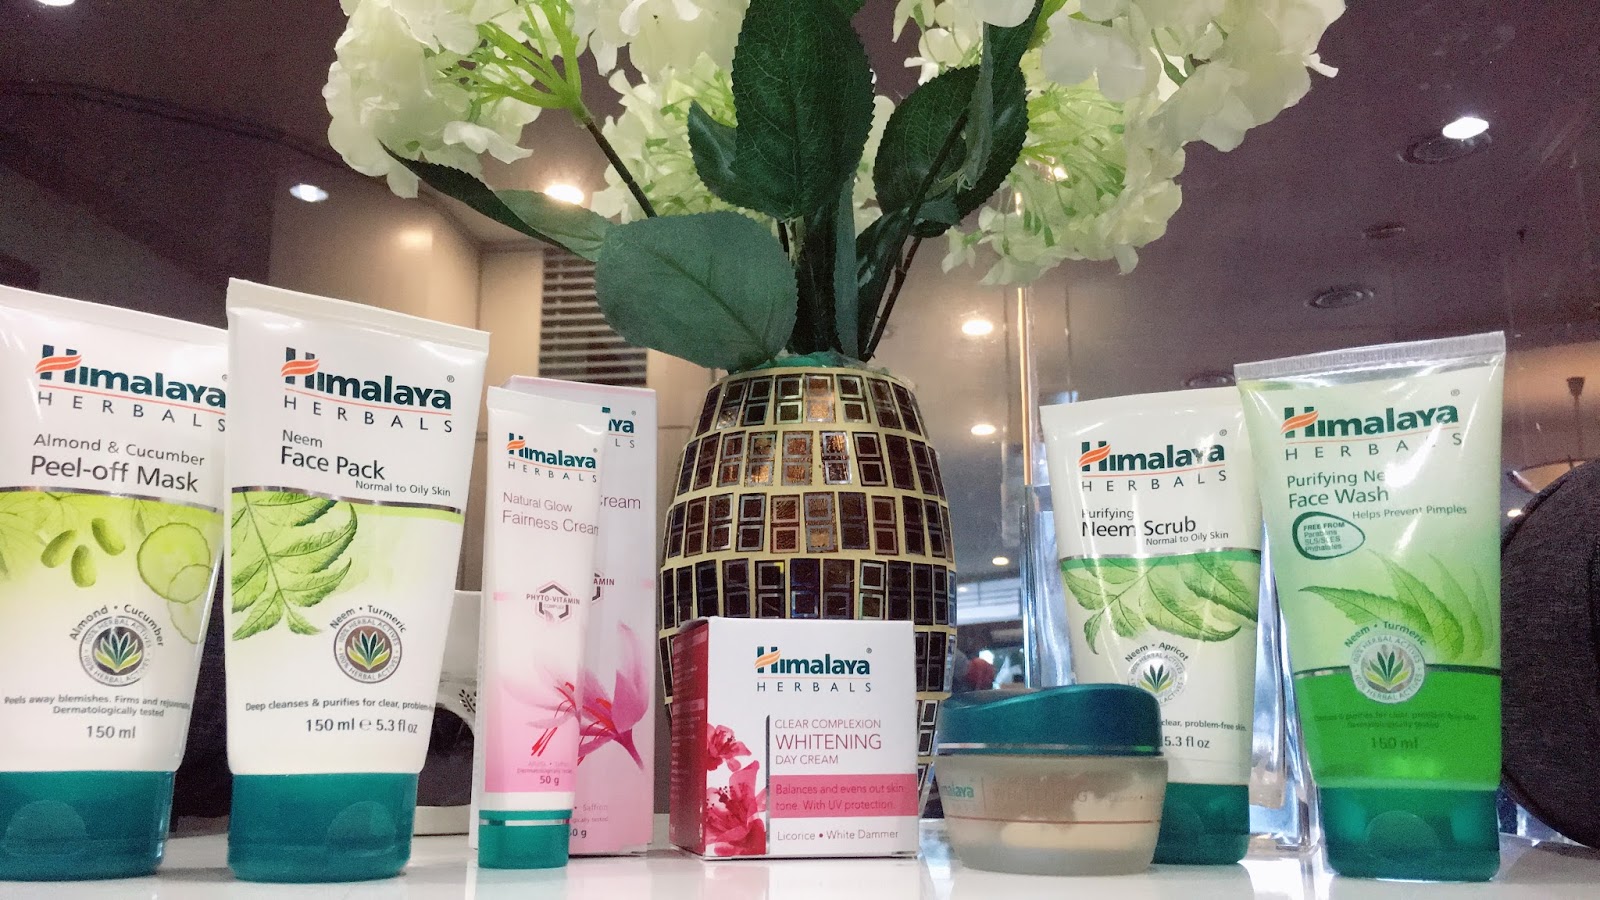 Skincare oh Skincare #Review (Himalaya Herbals)